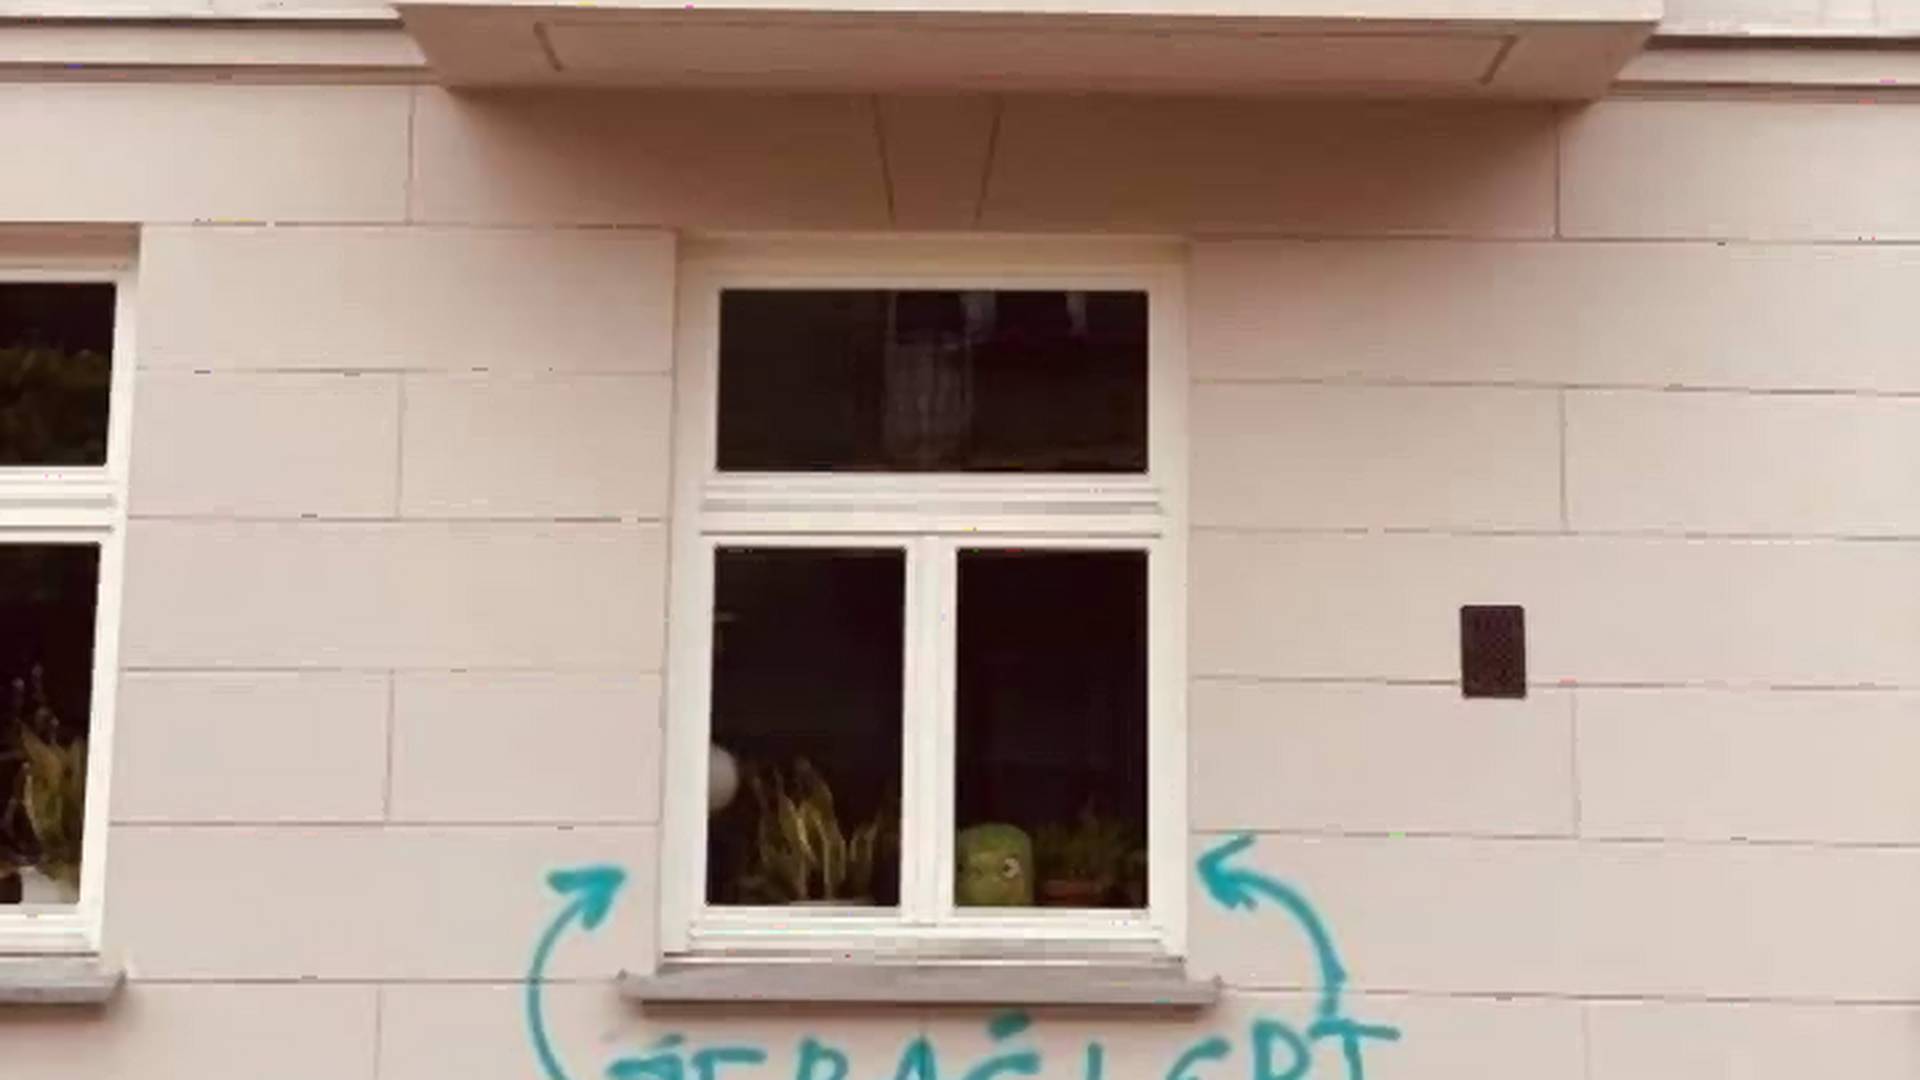 Warszawiacy zareagowali na homofobiczny napis pod oknem sąsiadów